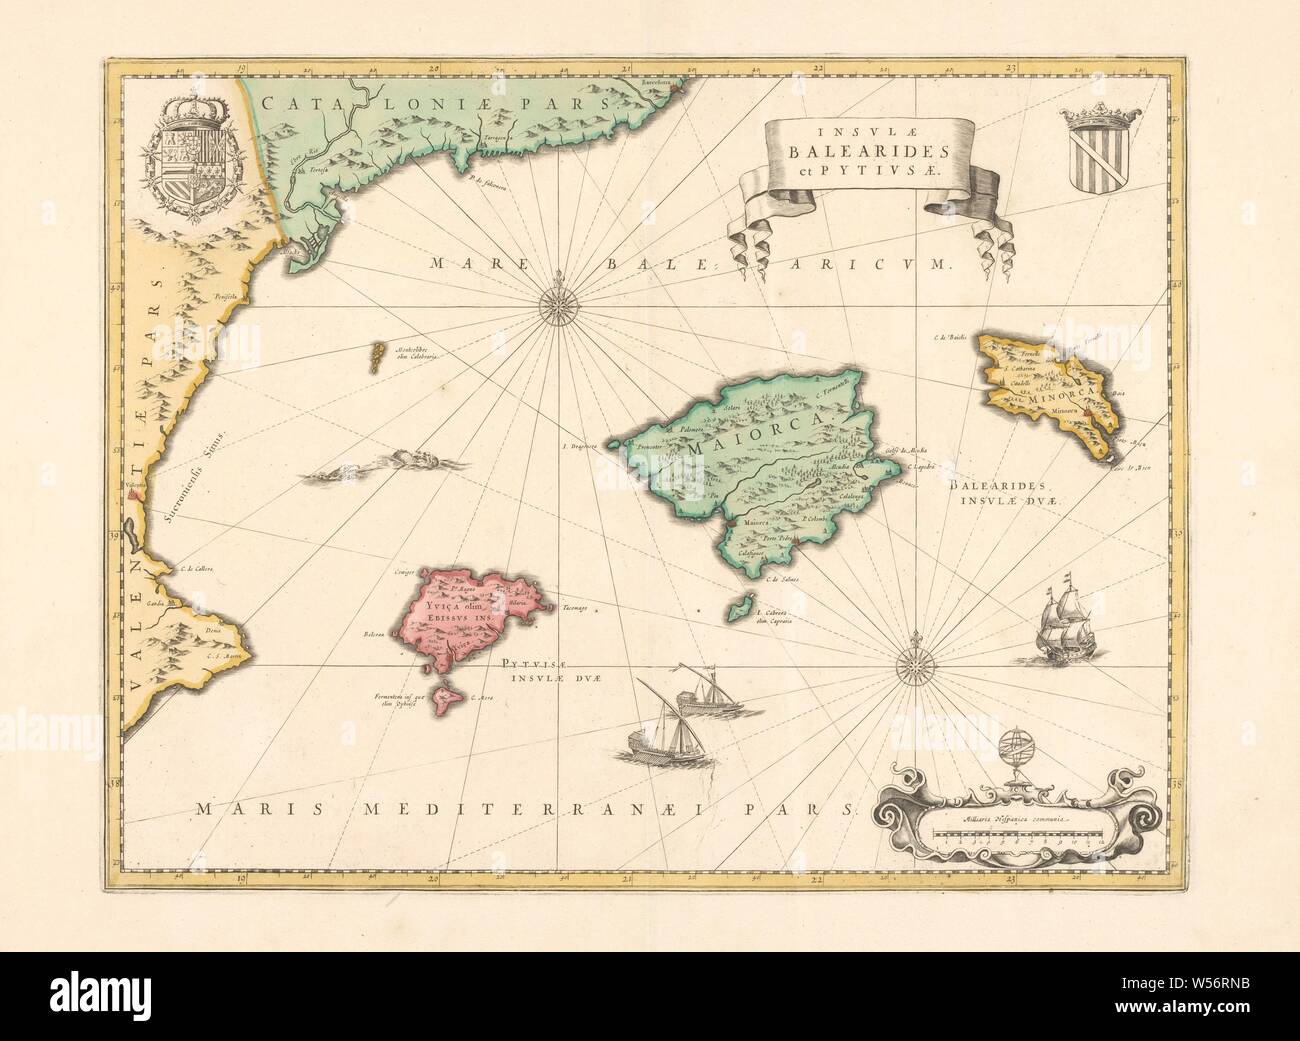 La cartografía en los Países Bajos, el mapa de las Islas Baleares y Pityus y la costa de España, Mapa de Baleares y Pityus y parte de la costa de España, bordeadas de amarillo, áreas de color, 2 brújula rosas: m.b. y r.o. Escudo coronado r.b, coronado el escudo con el Toisón de oro l.b .. Los buques en la mar, r.o. escala millas en español con un globo. Inscripción, r.b .: / / et BALEARIDES INSVLAE PITYVSAE, Baleares, Willem Janszoon Blaeu, Amsterdam, 1600 - 1650, el papel, el grabado, la h de 37,9 cm a 49,2 cm × W Foto de stock